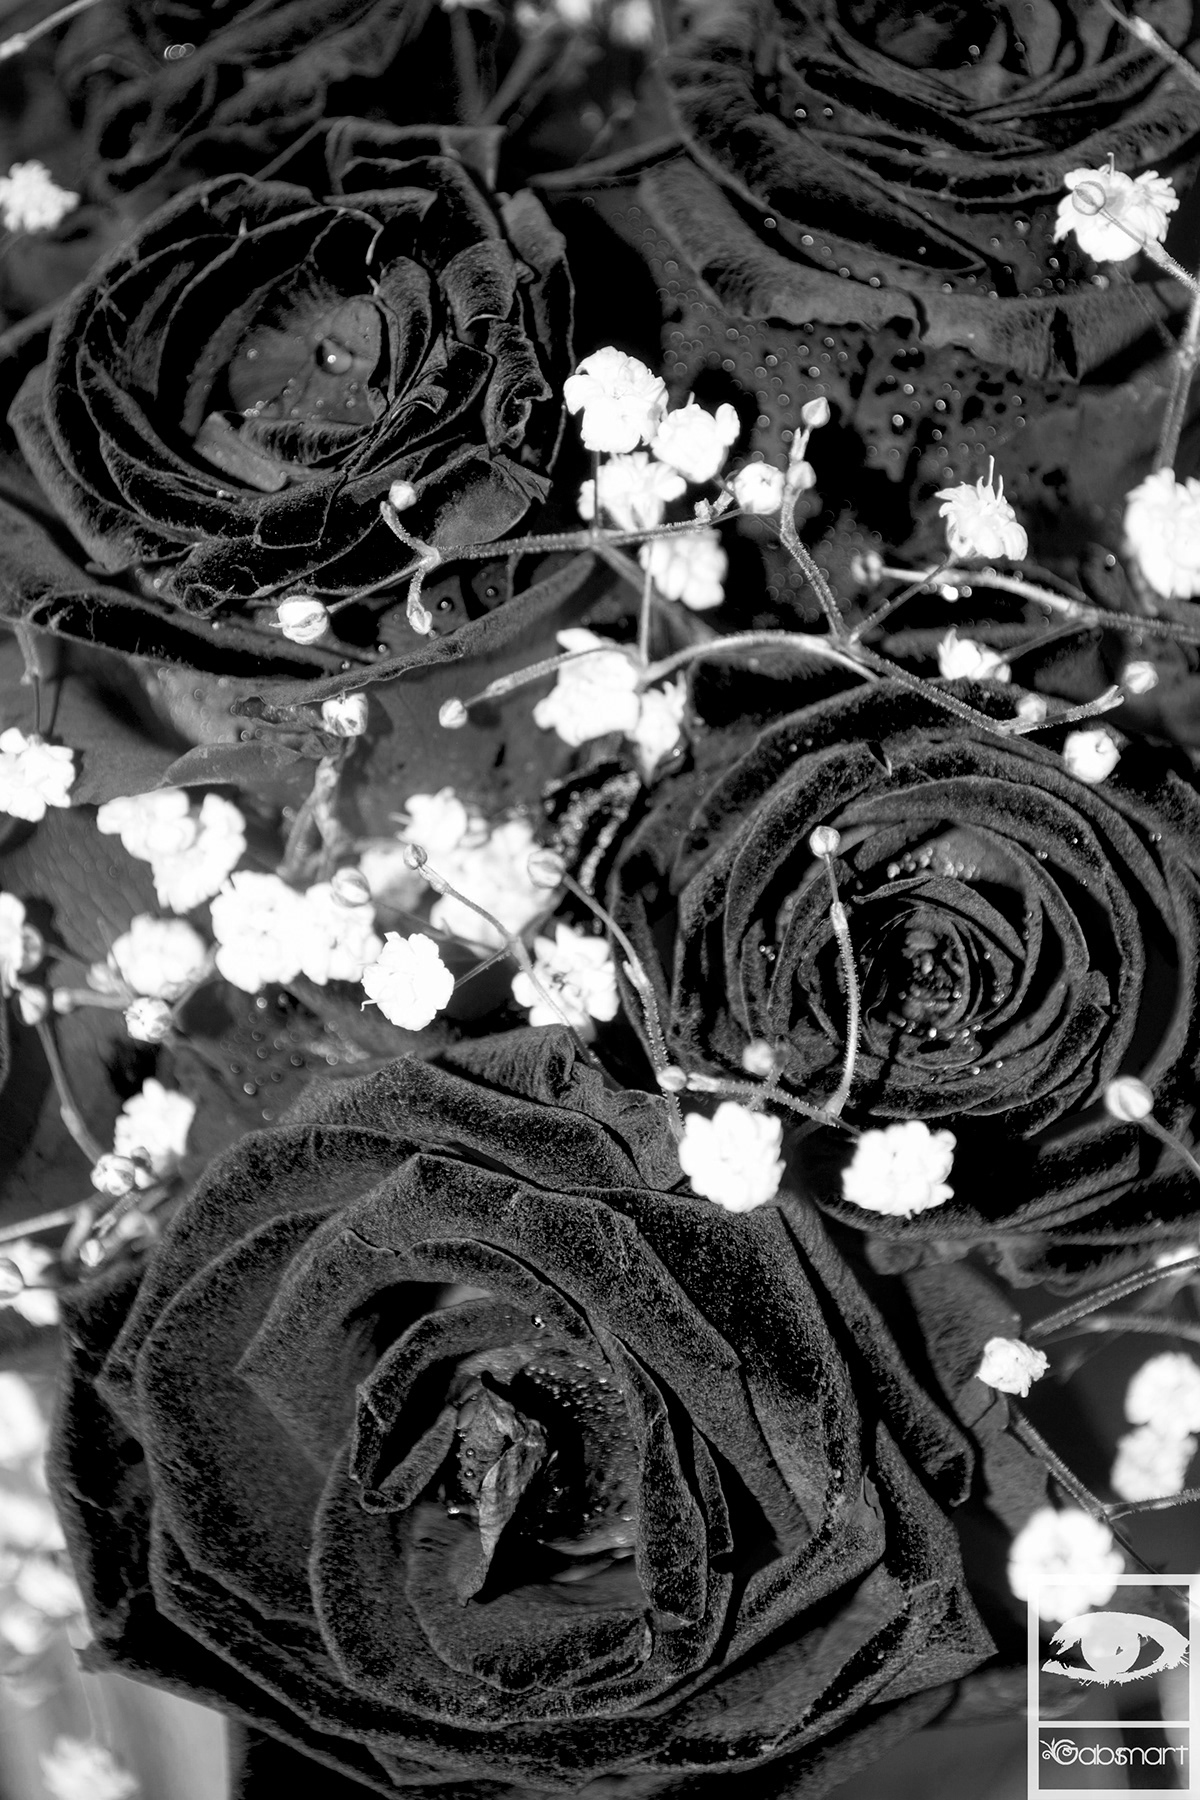 terciopelo velvet rose flower texture